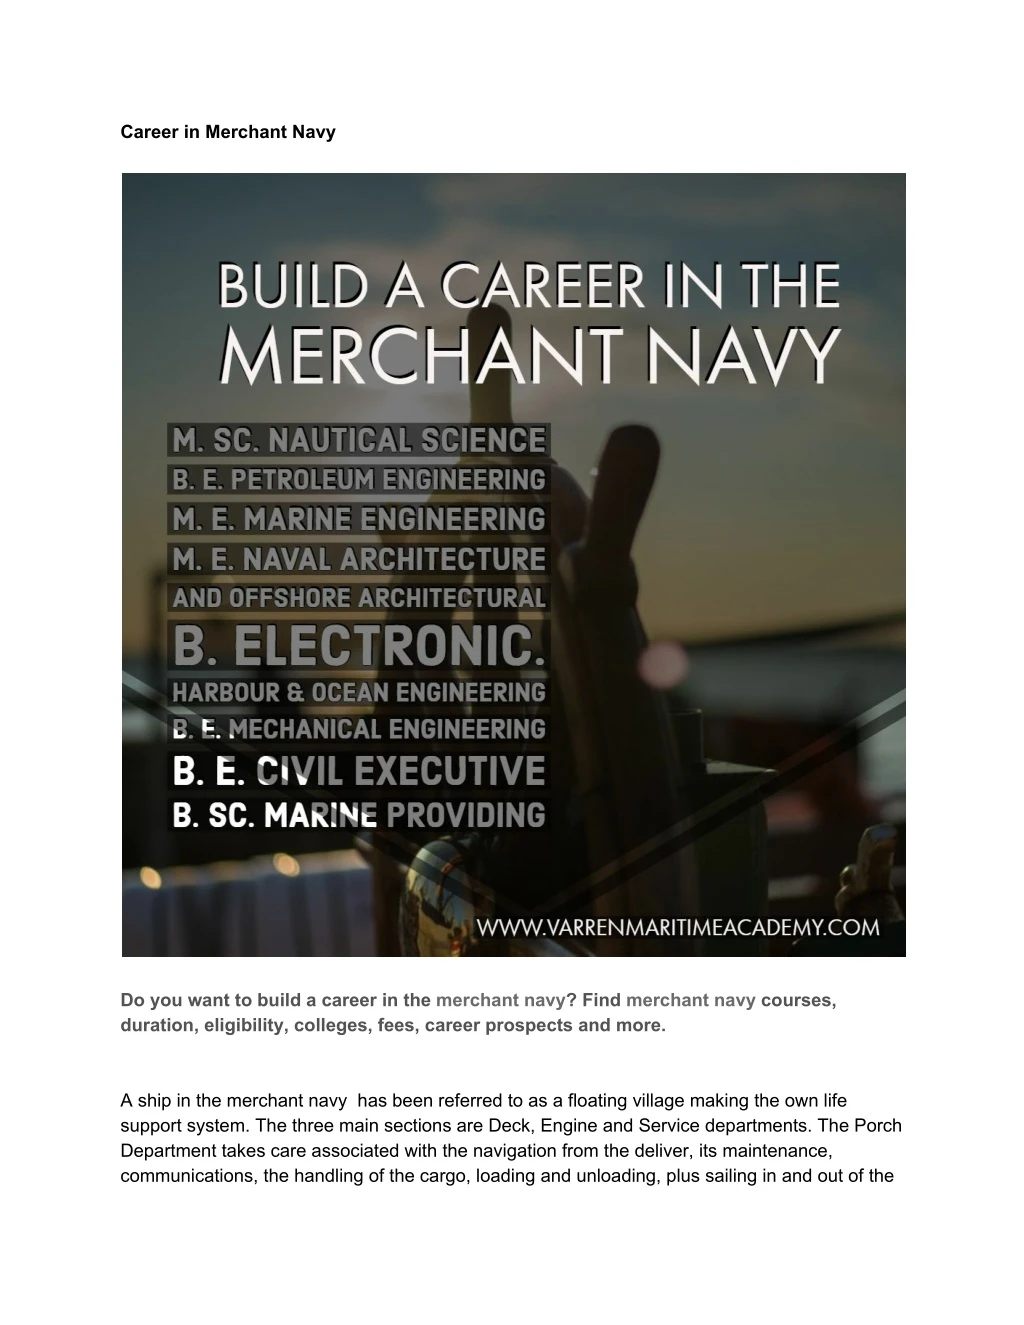 career in merchant navy